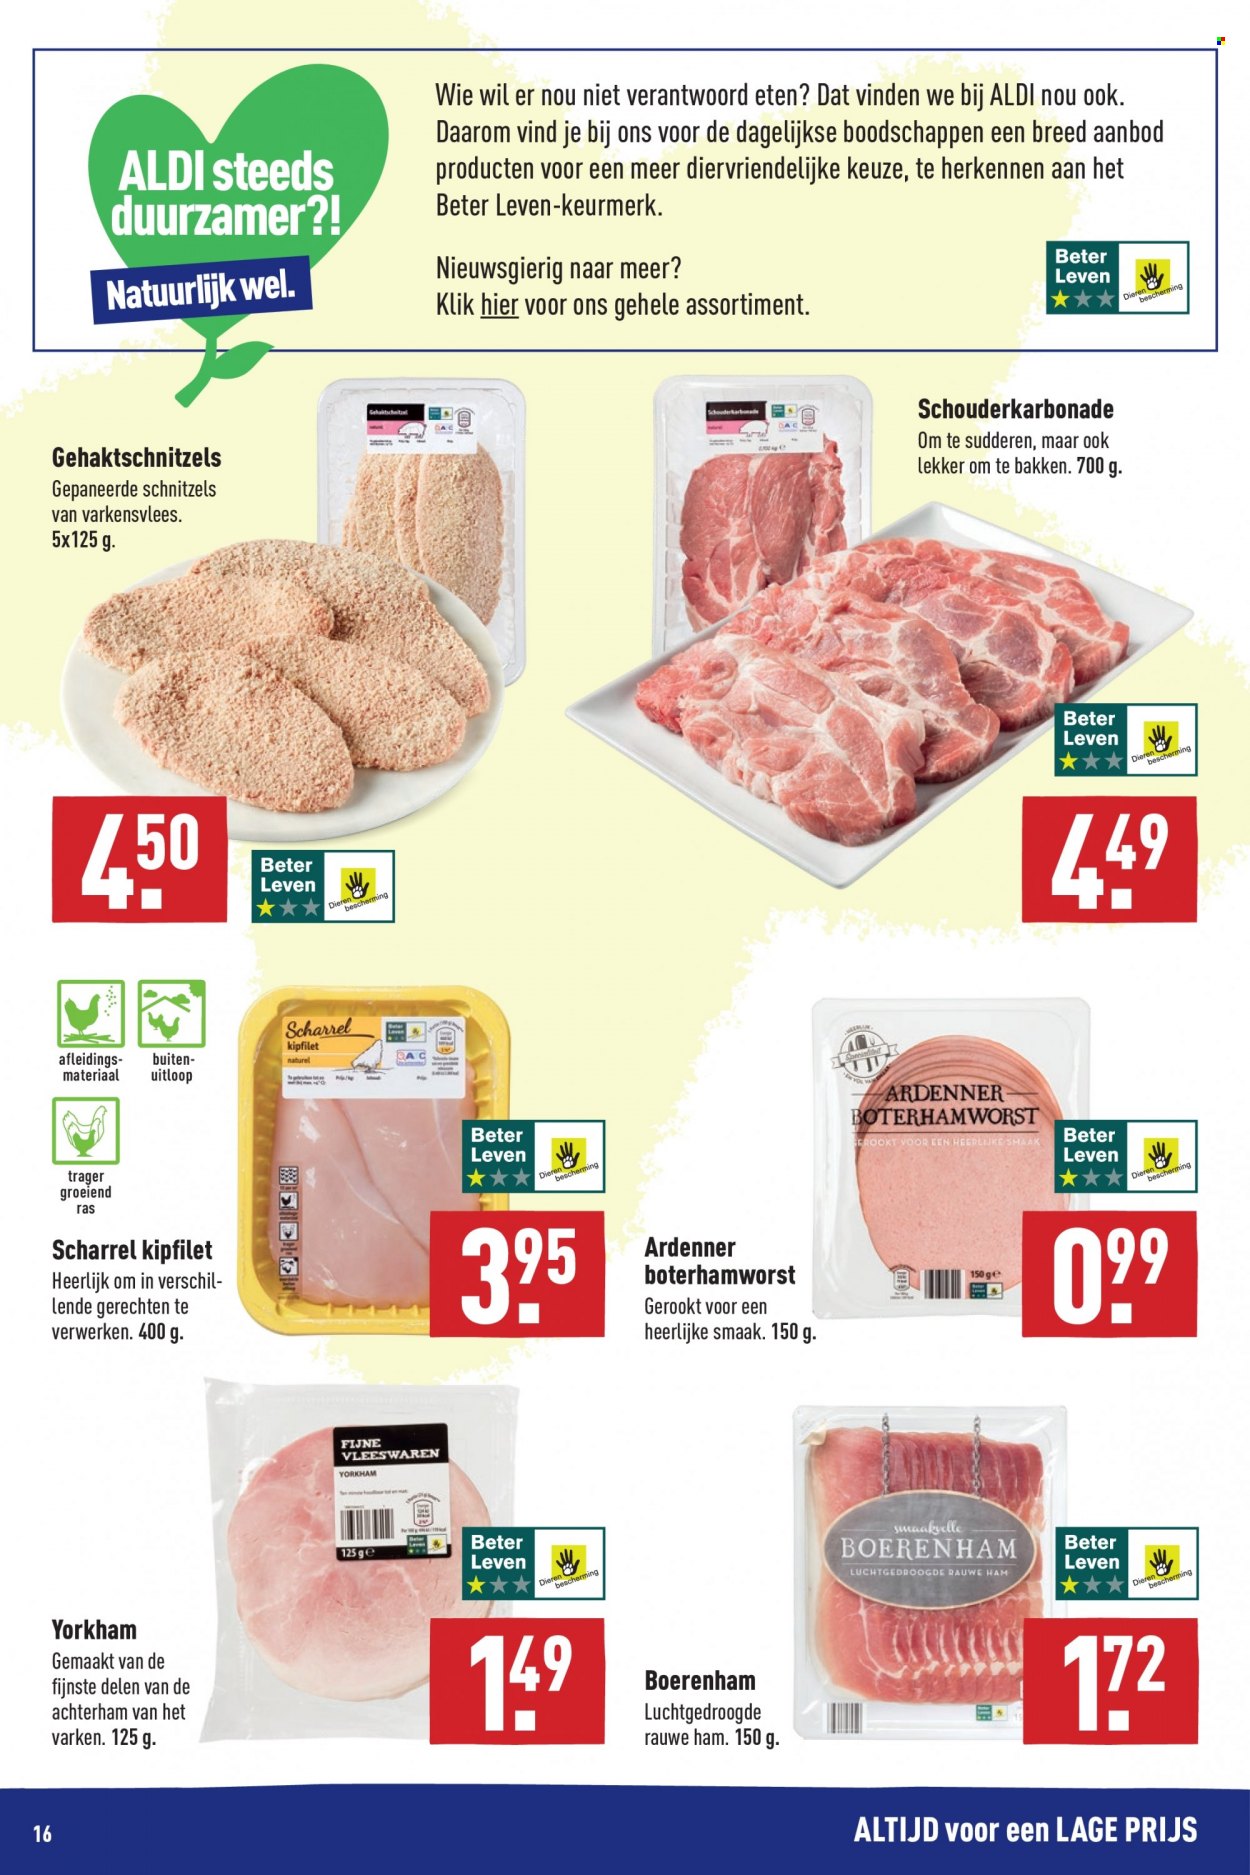 thumbnail - Aldi-aanbieding - 25-10-2021 - 31-10-2021 -  producten in de aanbieding - varkensvlees, kipfilet, ham, yorkham, achterham. Pagina 16.